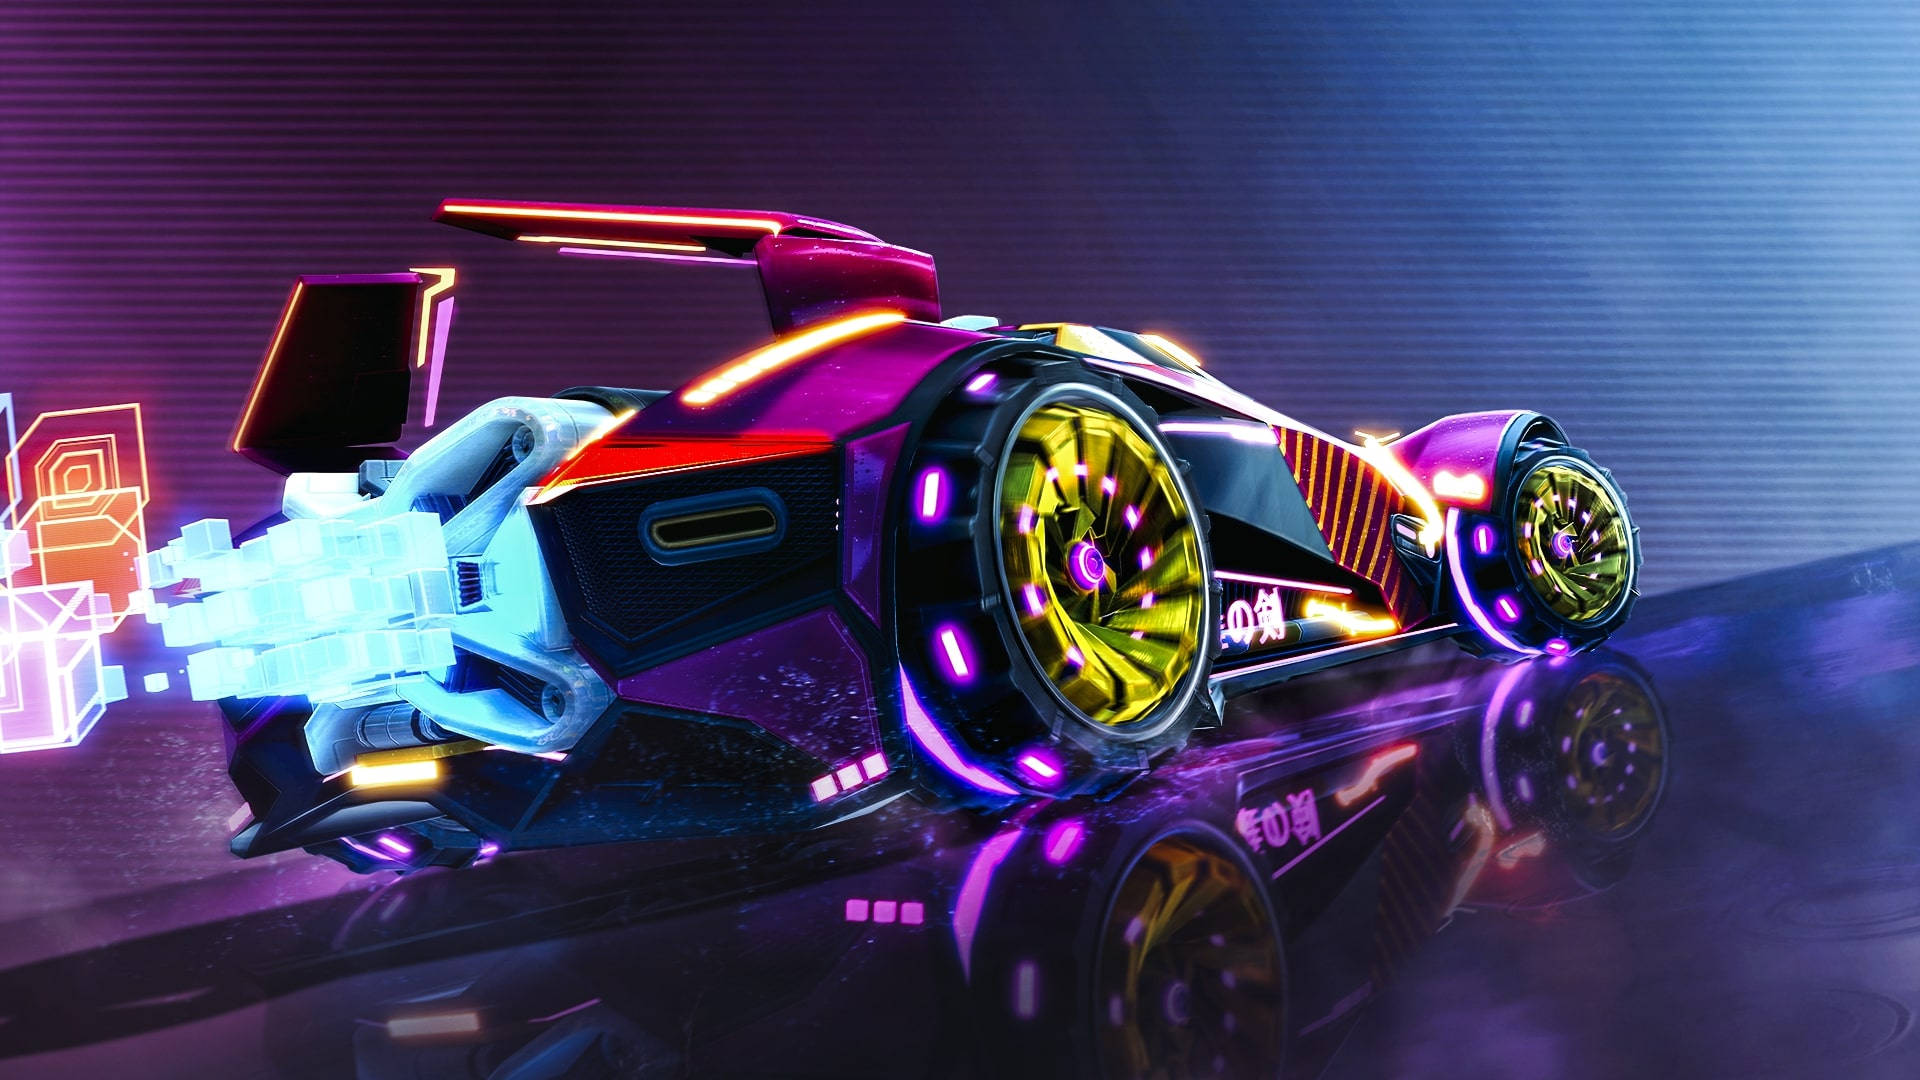 Cool Rocket League Vibrant Neon Car Background